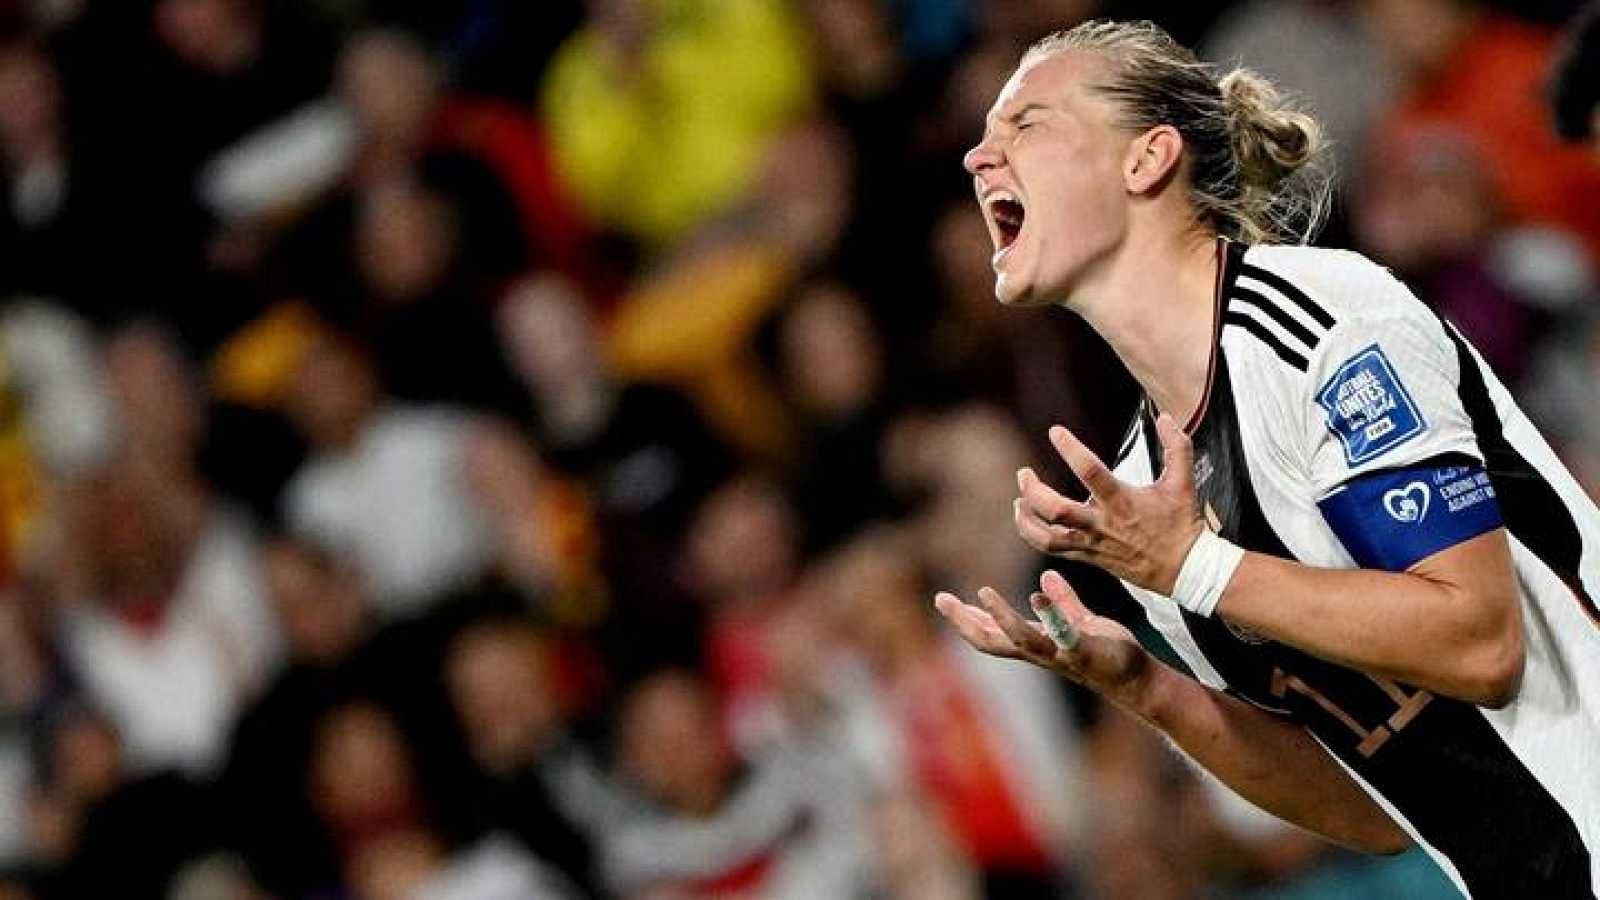 Alemania cae por primera vez en la fase de grupos del Mundial femenino -- Ver ahora